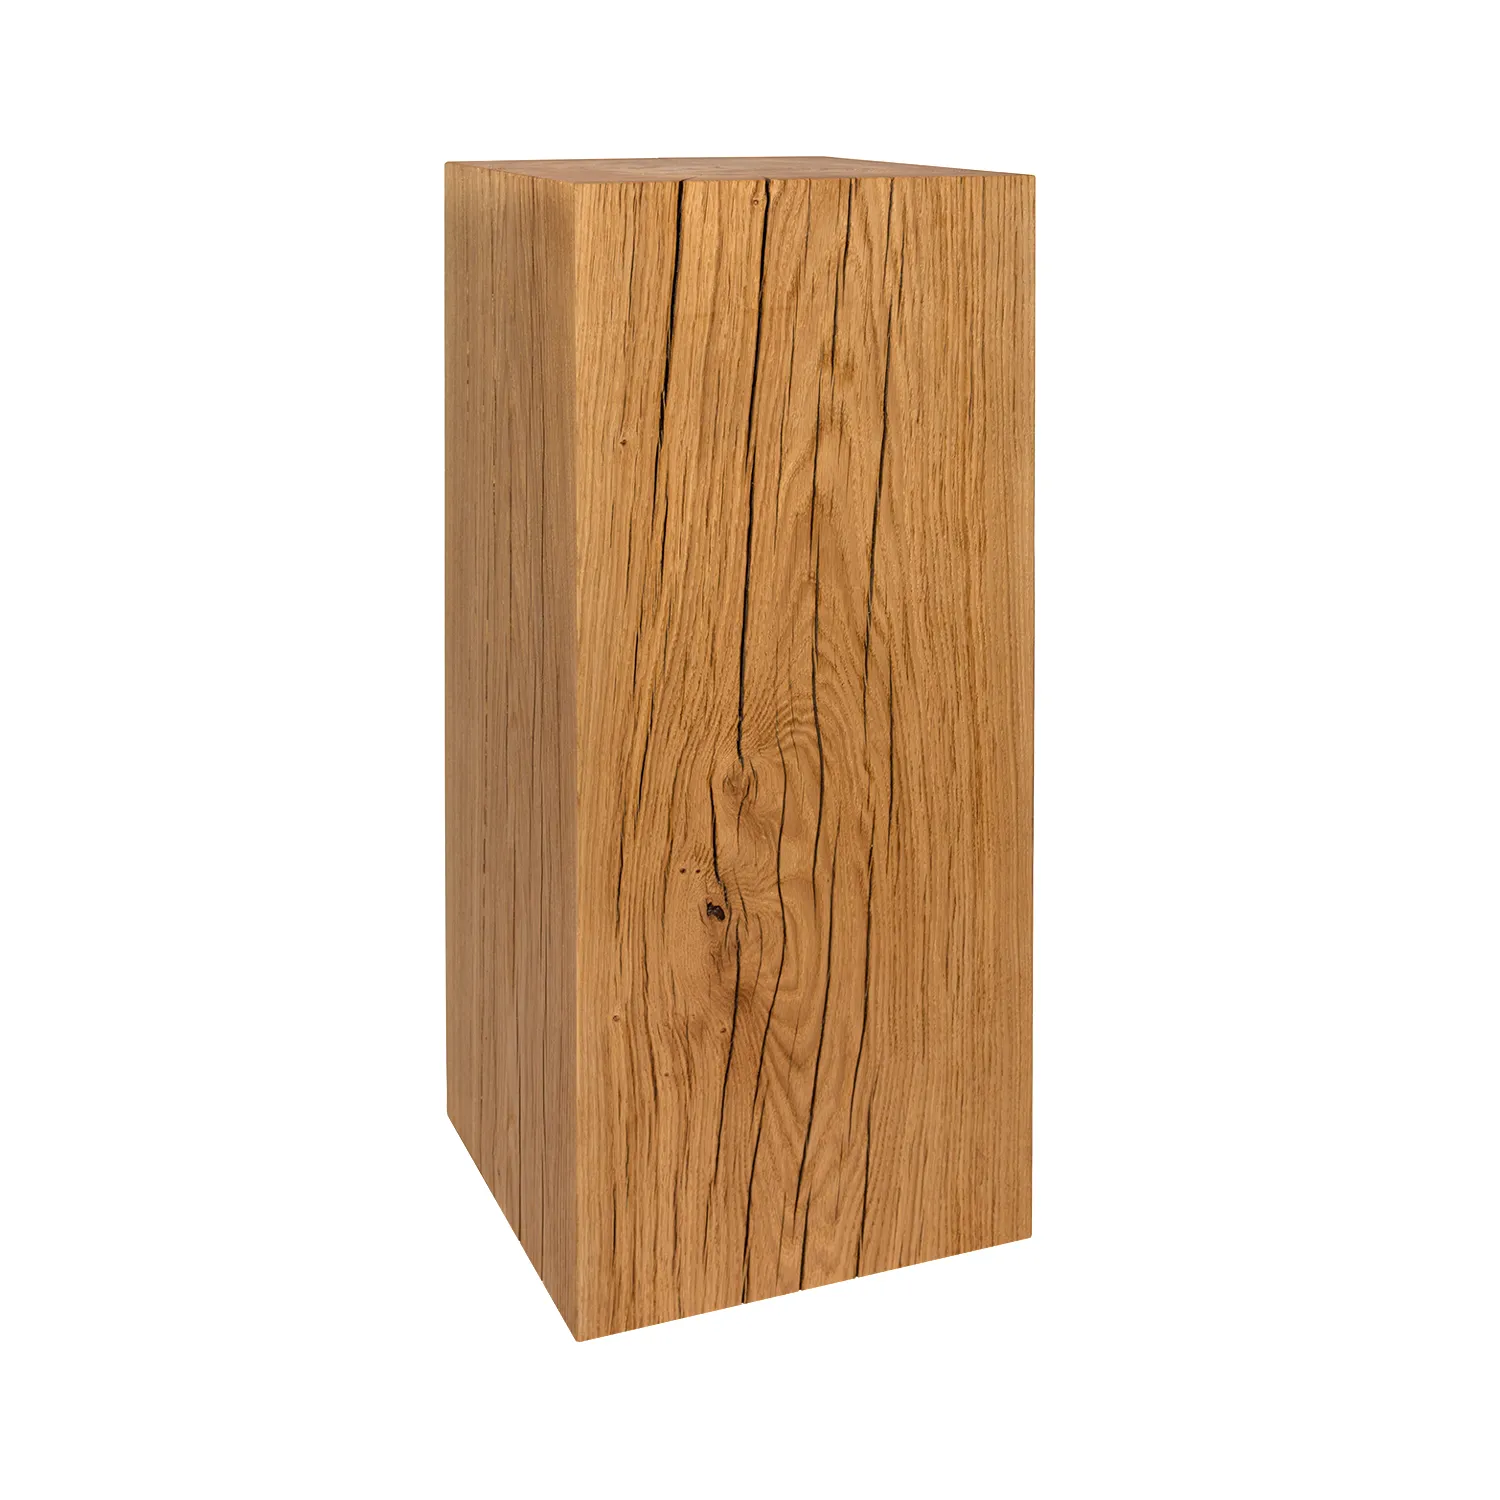 Holzblock Tisch mit auffäliger Maserung